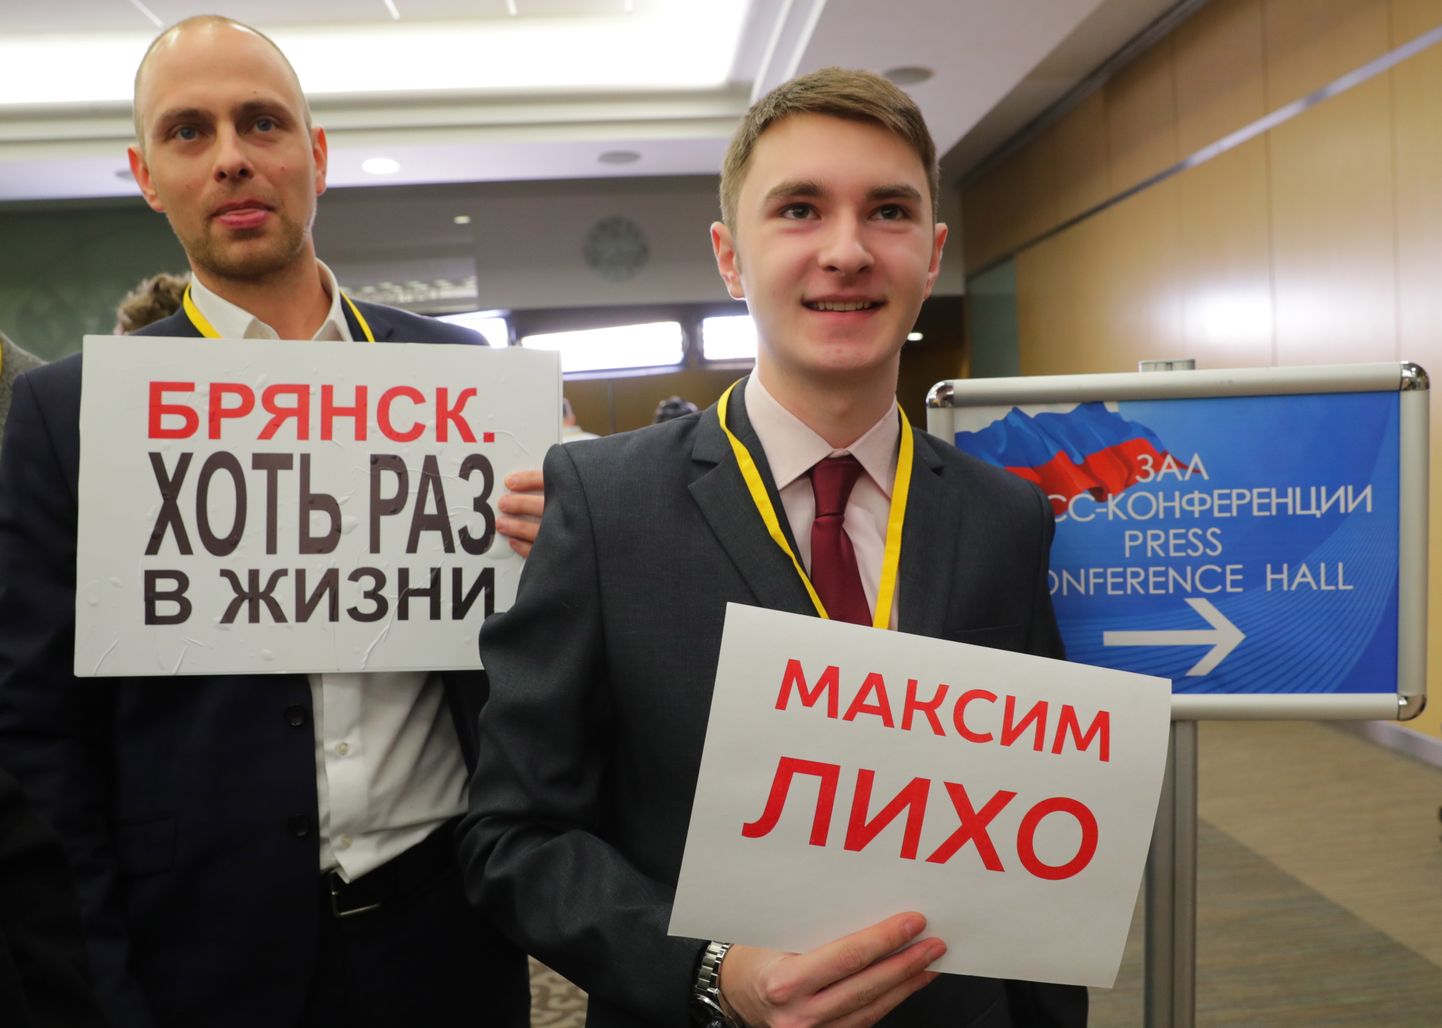 Журналистам запретили привлекать внимание Владимира Путина большими плакатами.